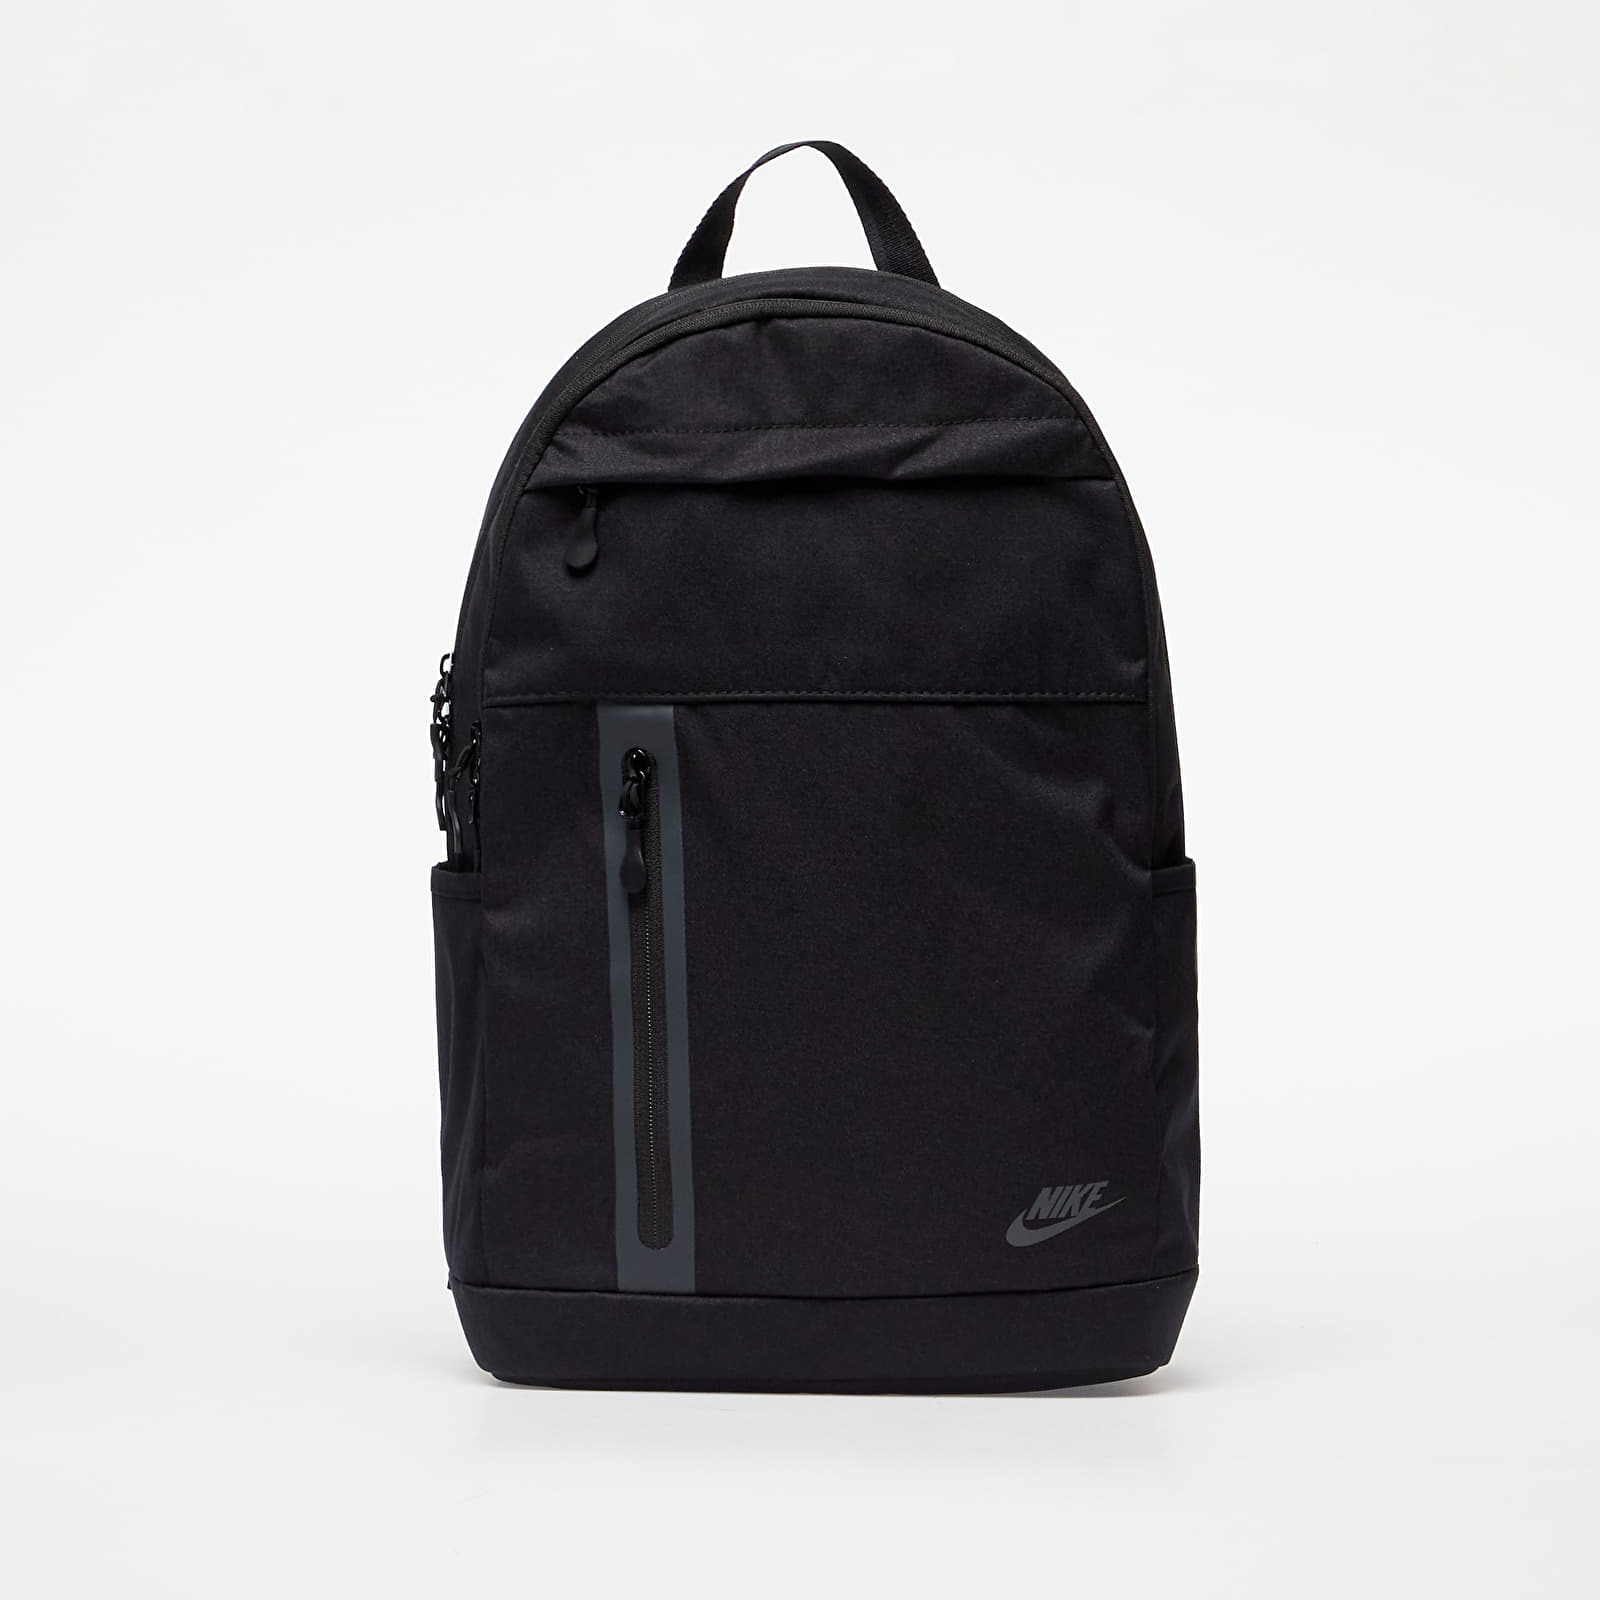 Levně Nike Elemental Premium Backpack Black/ Black/ Anthracite